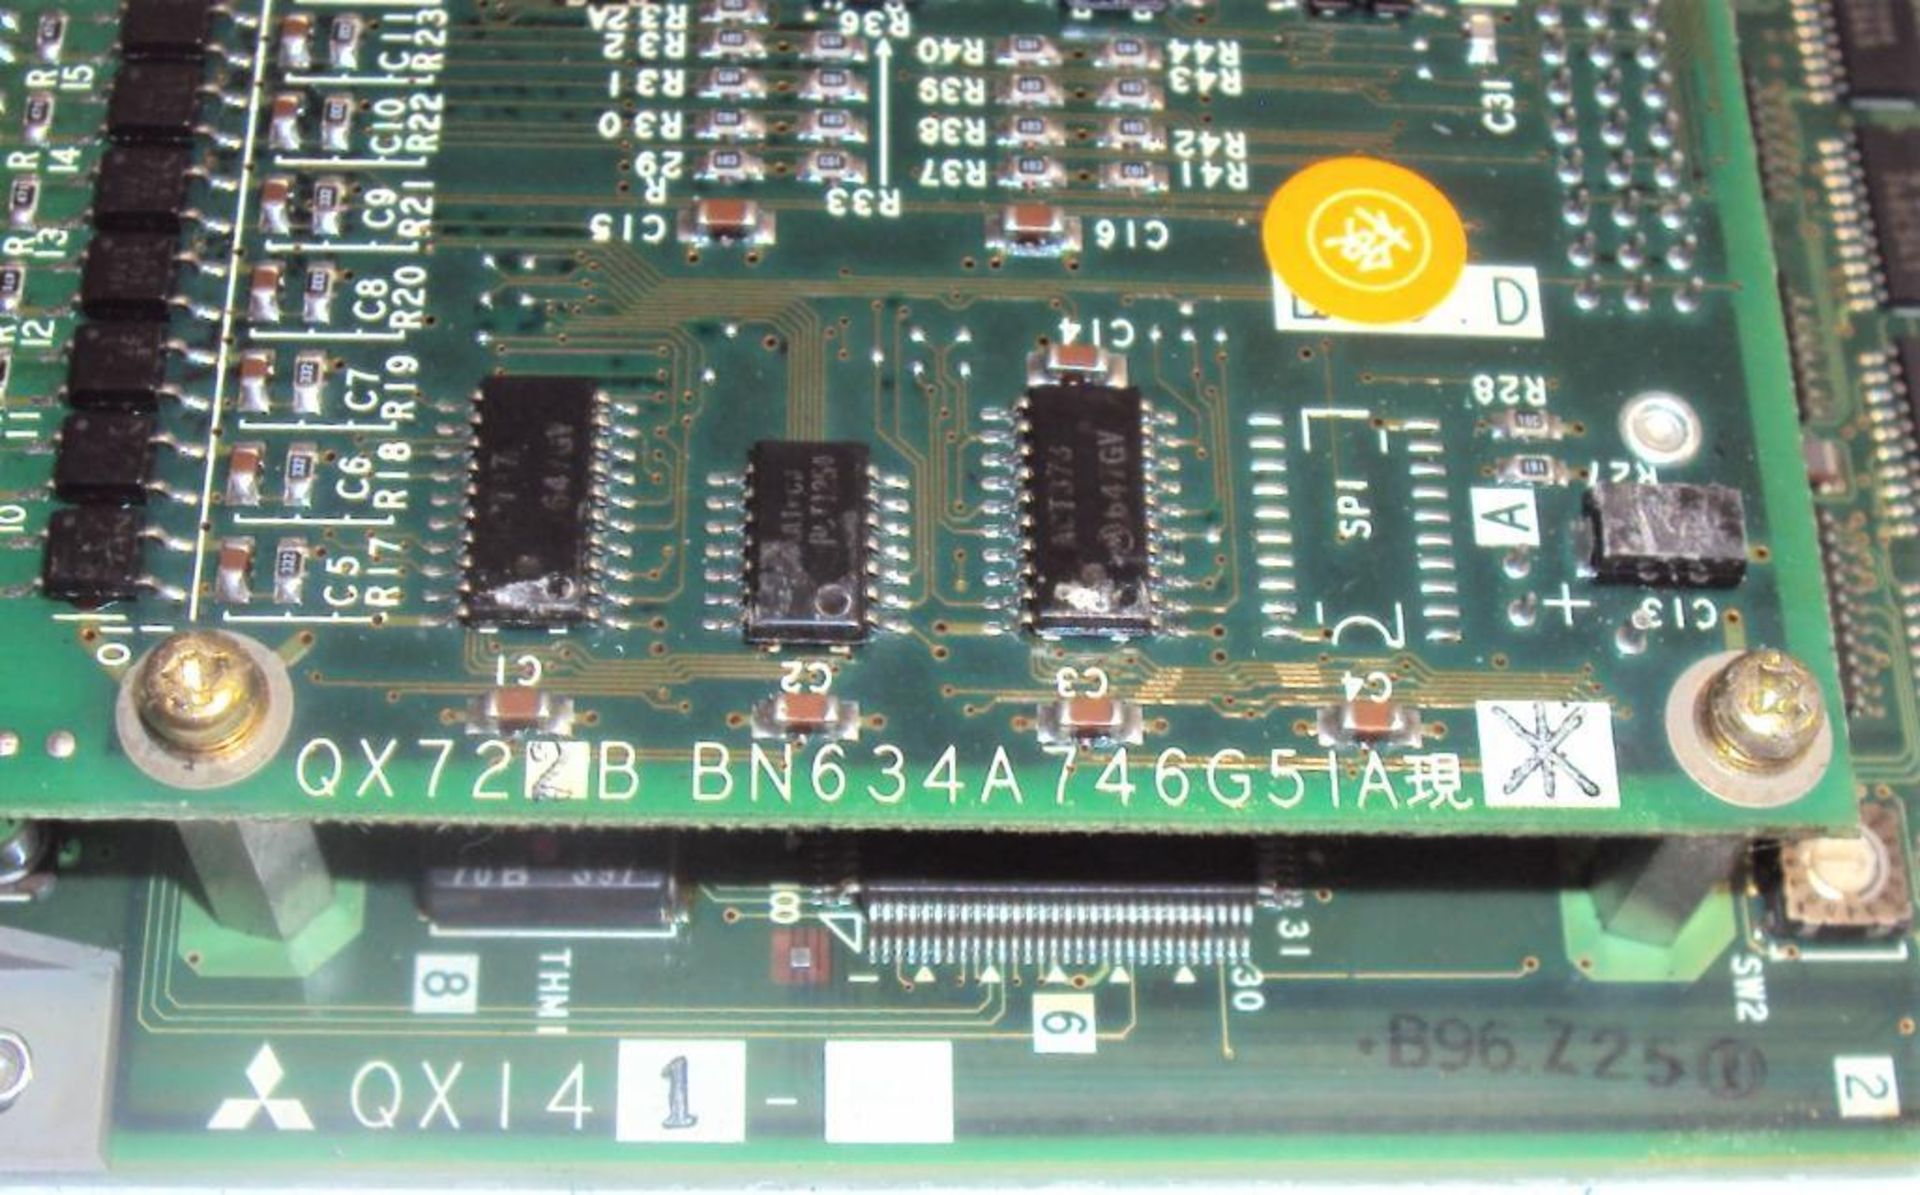 Mitsubishi Mazatrol QX141C BN634A617G52 CPU Module w/ (2) Memory Cassettes QX812 & QX818 and BN634A7 - Image 7 of 7